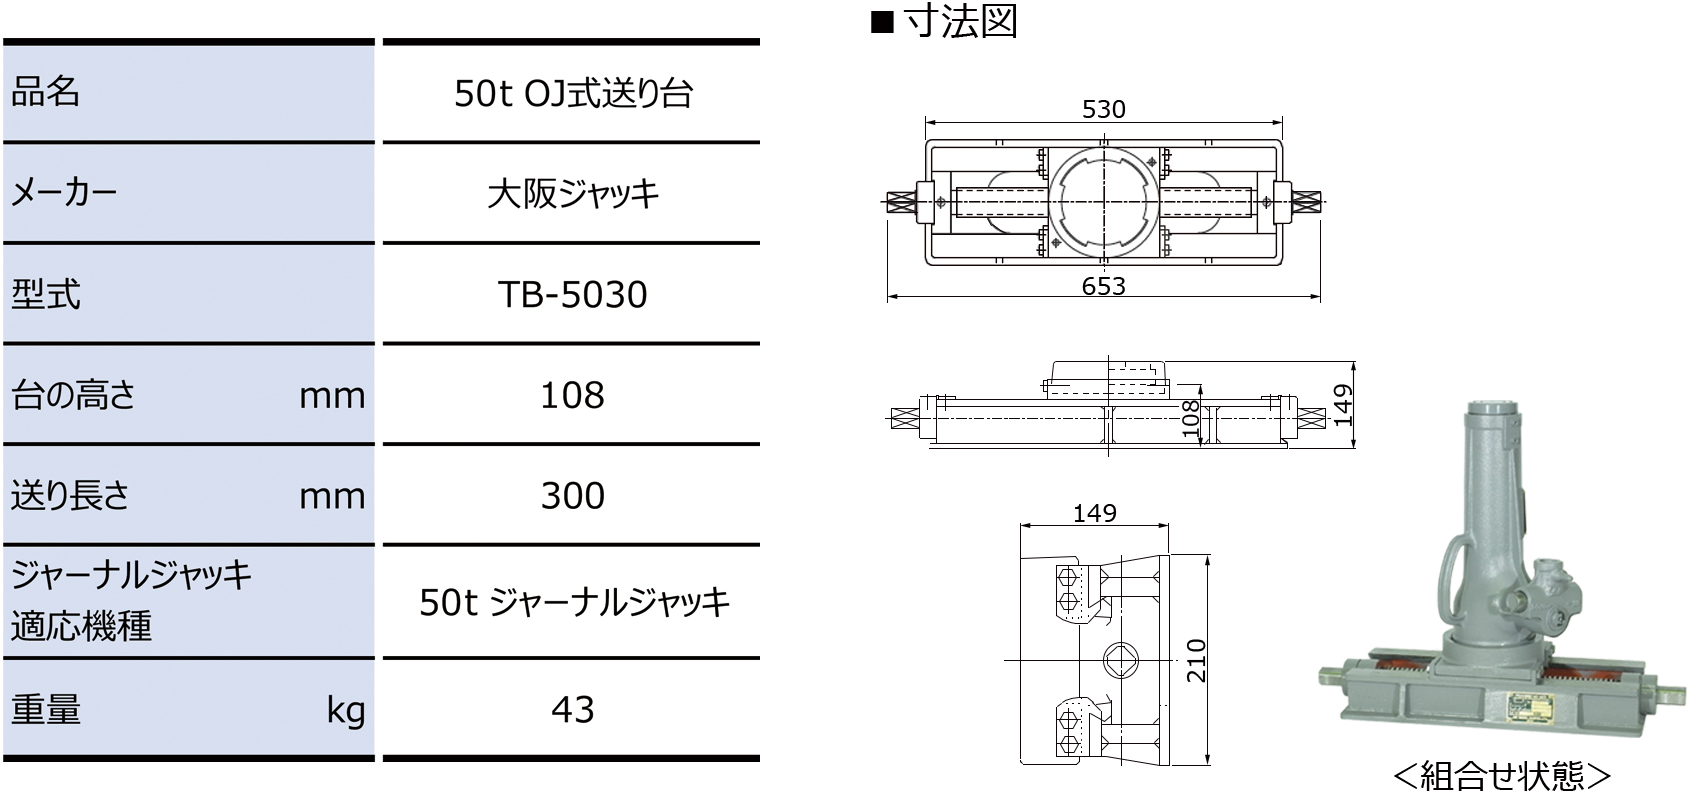 大阪ジャッキ OJ ジャーナルジャッキ 50トン 50ton - 工具、DIY用品